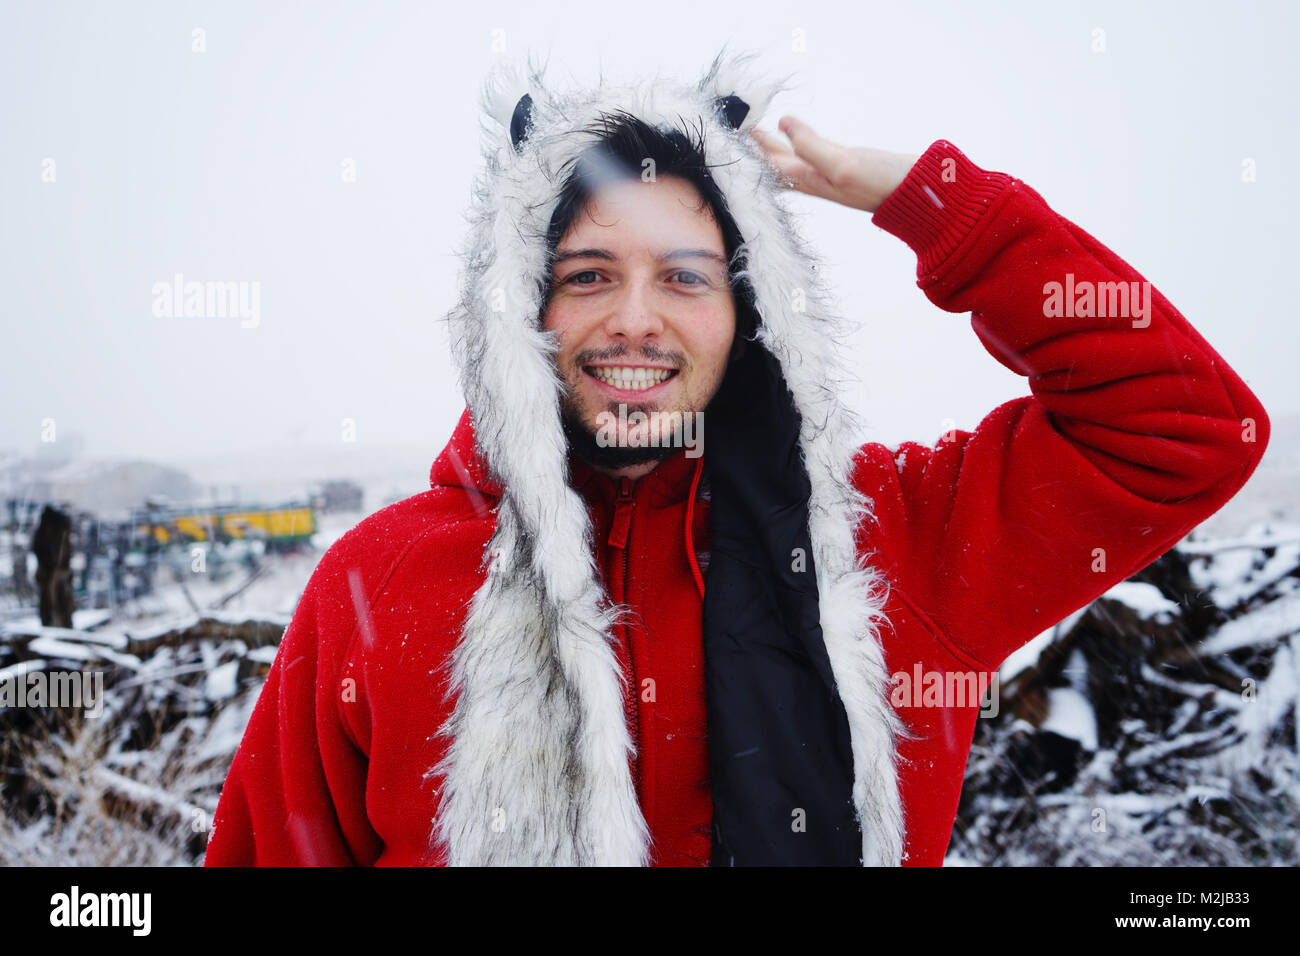 Jeune homme jouissant d'un jour de neige Banque D'Images